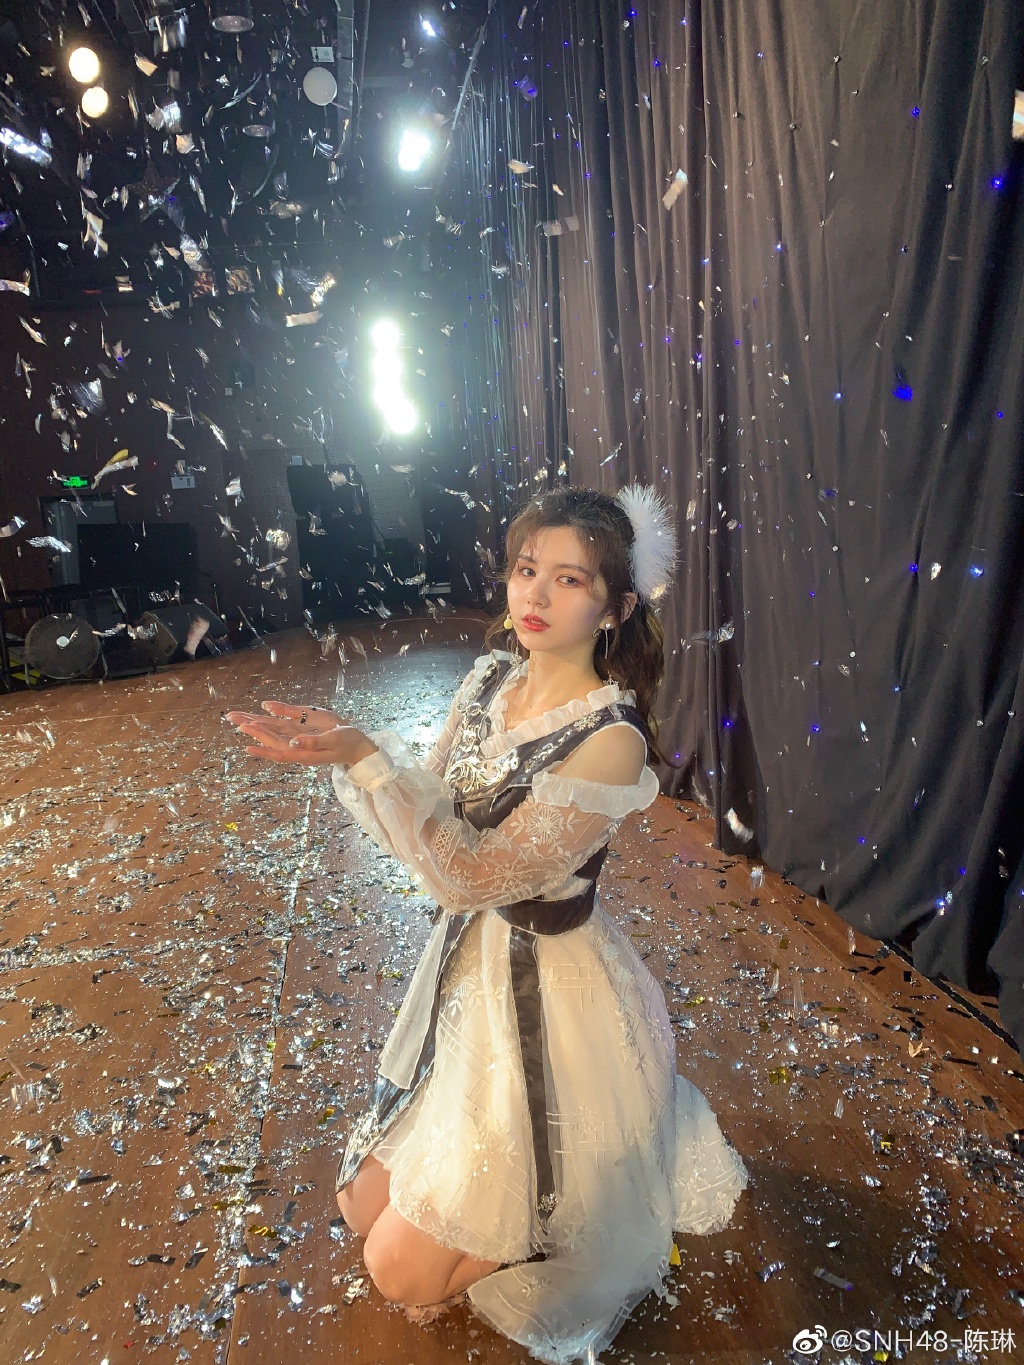 SNH48-陈琳美女迷人写真美照欣赏好可爱啊